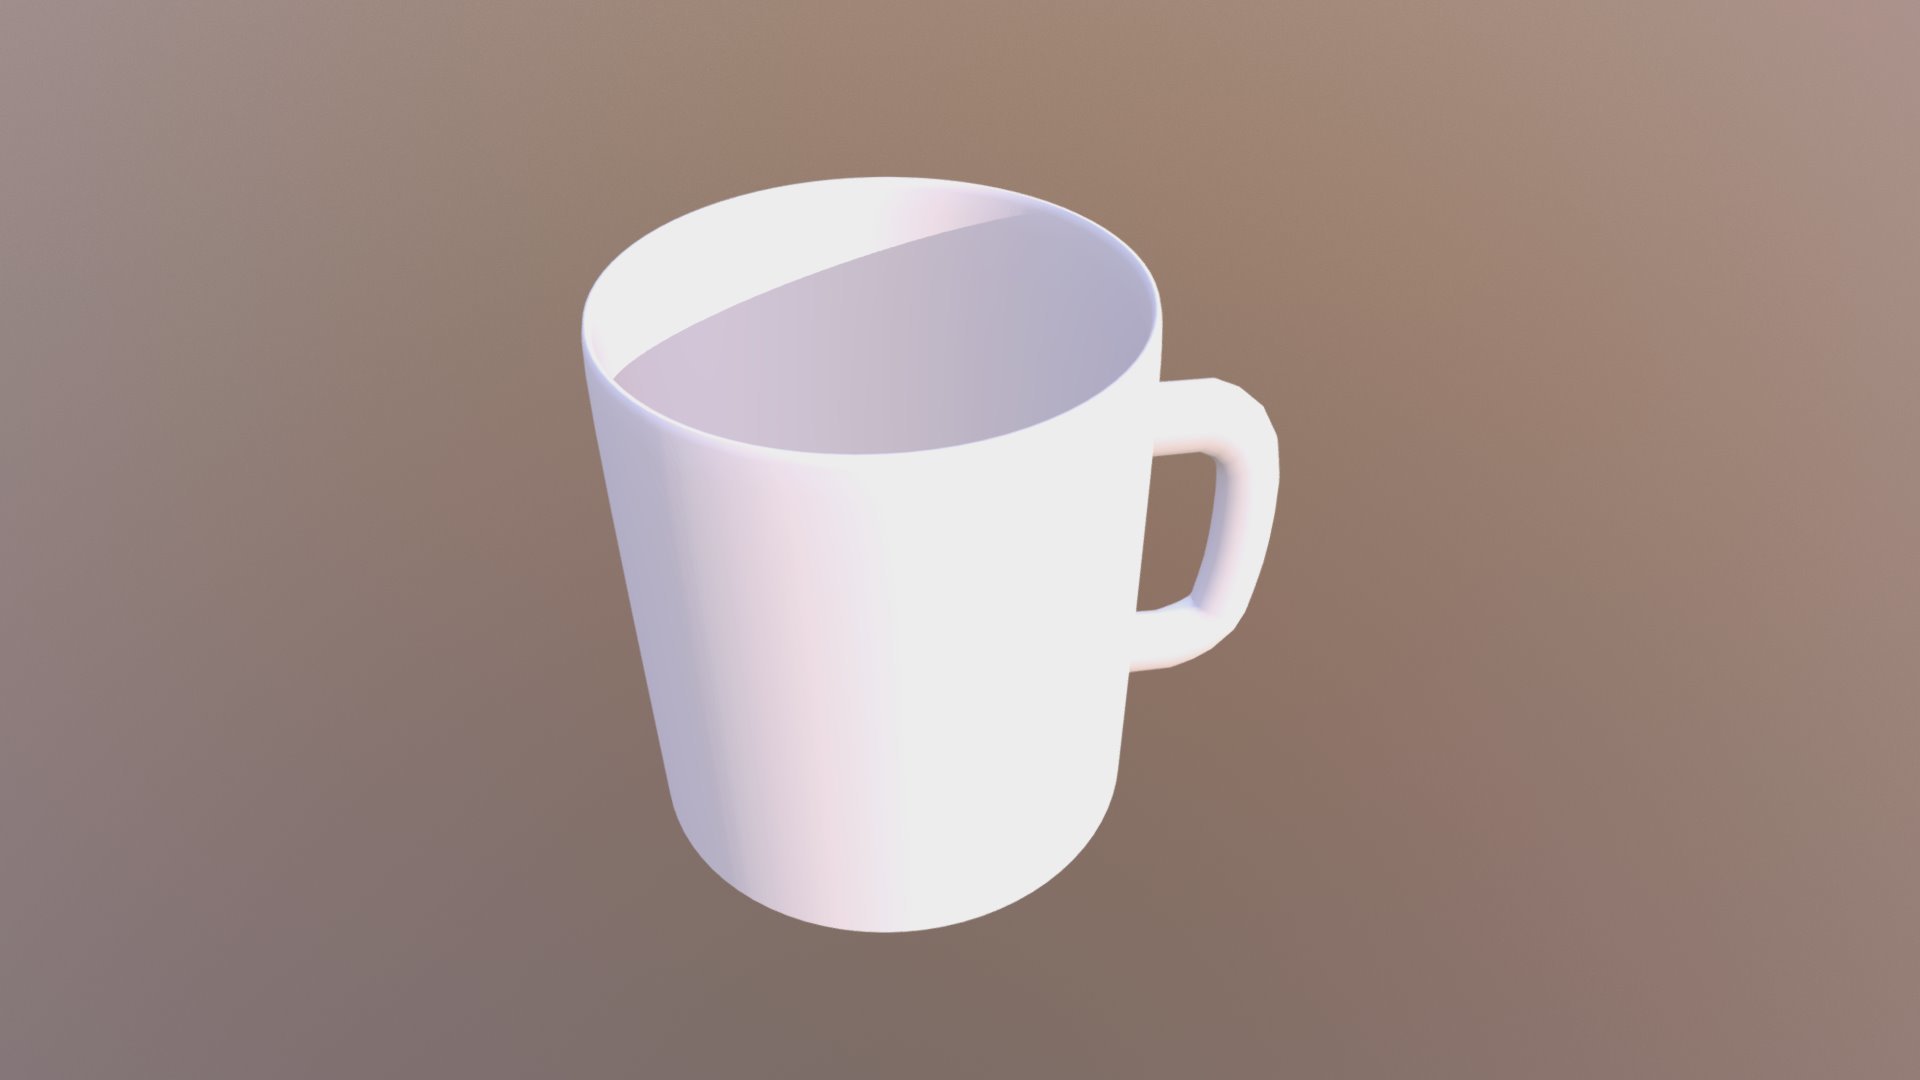 Free 3D Mug Models